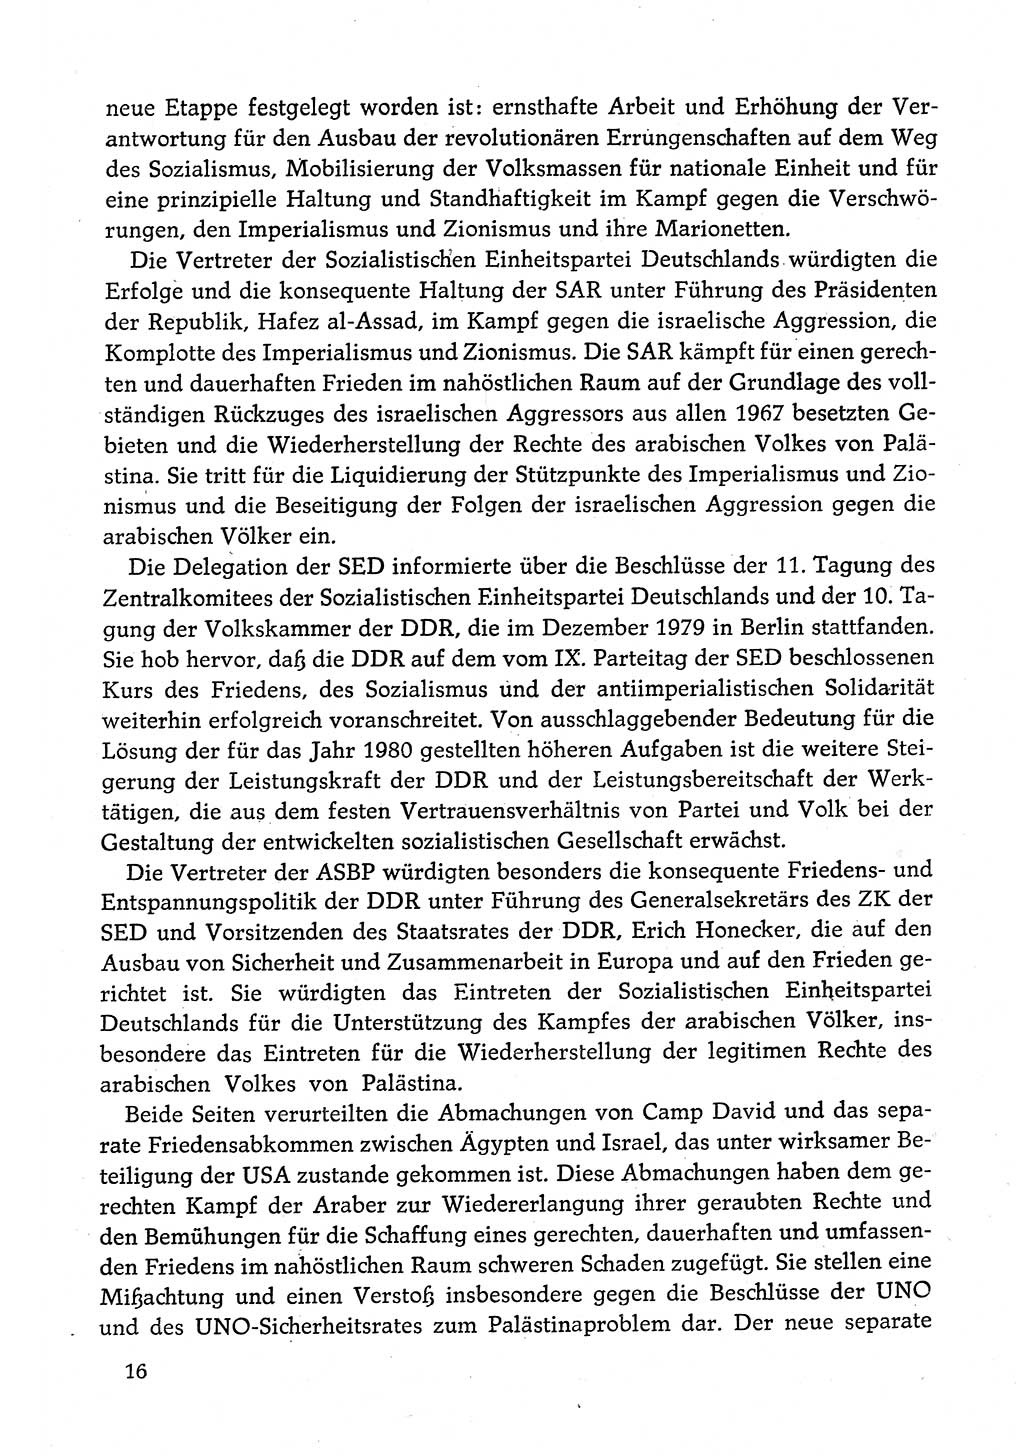 Dokumente der Sozialistischen Einheitspartei Deutschlands (SED) [Deutsche Demokratische Republik (DDR)] 1980-1981, Seite 16 (Dok. SED DDR 1980-1981, S. 16)